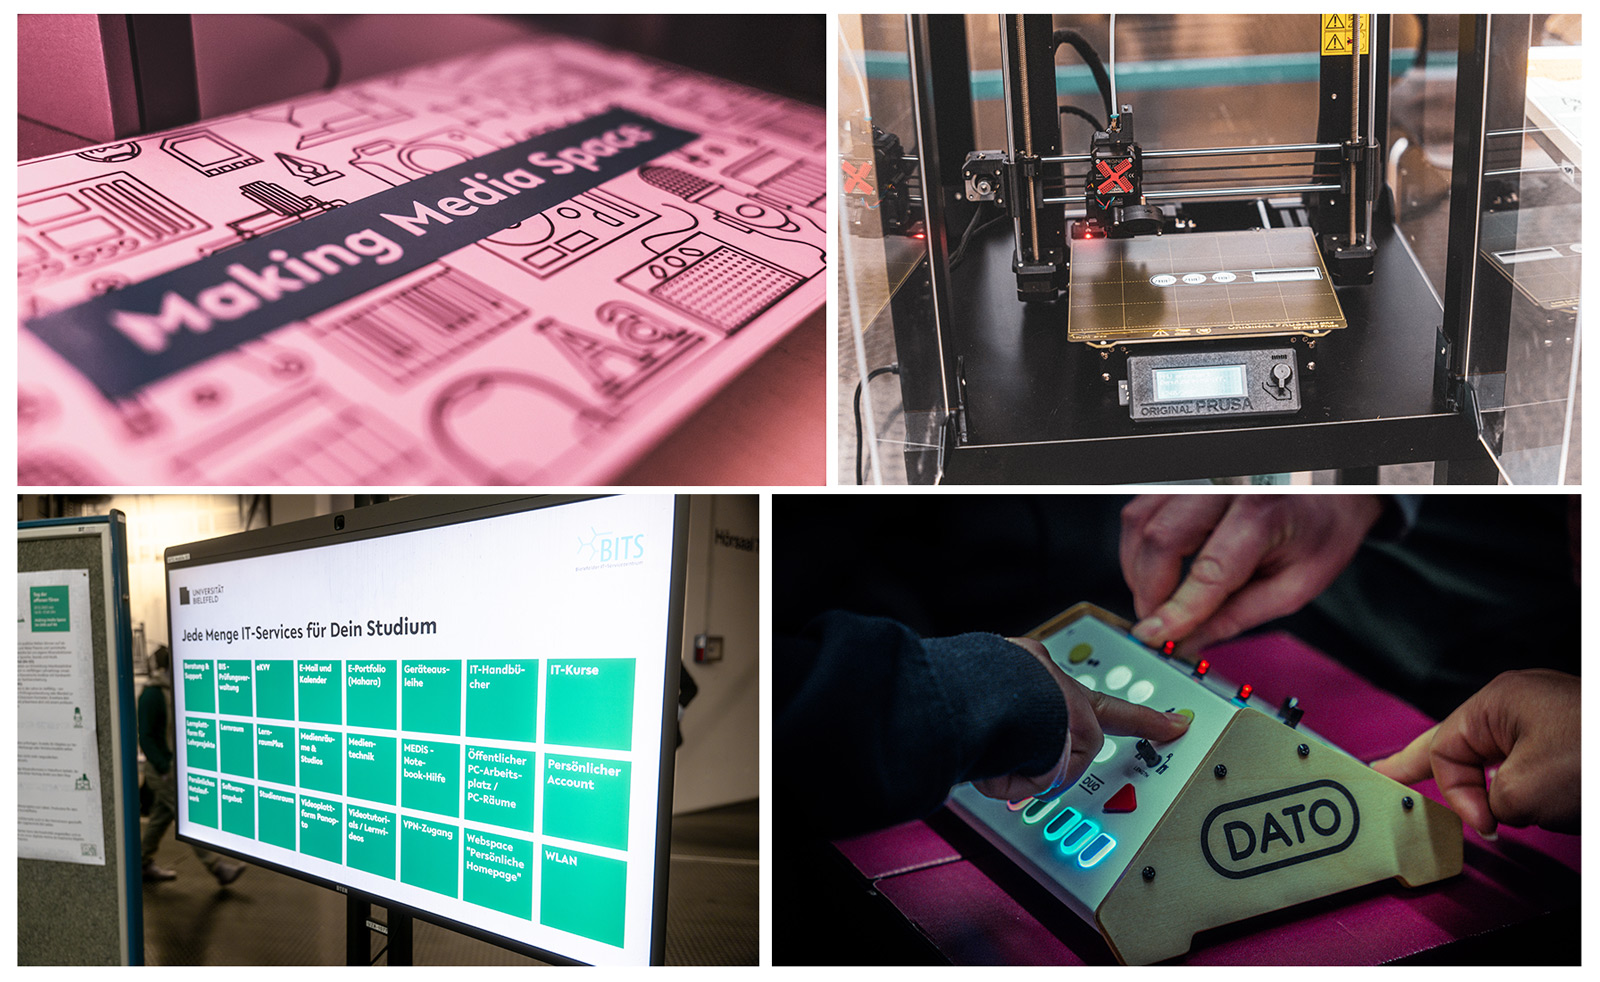 Fotokollage: 3D-Drucker, Monitor mit Liste von IT-Services des BITS